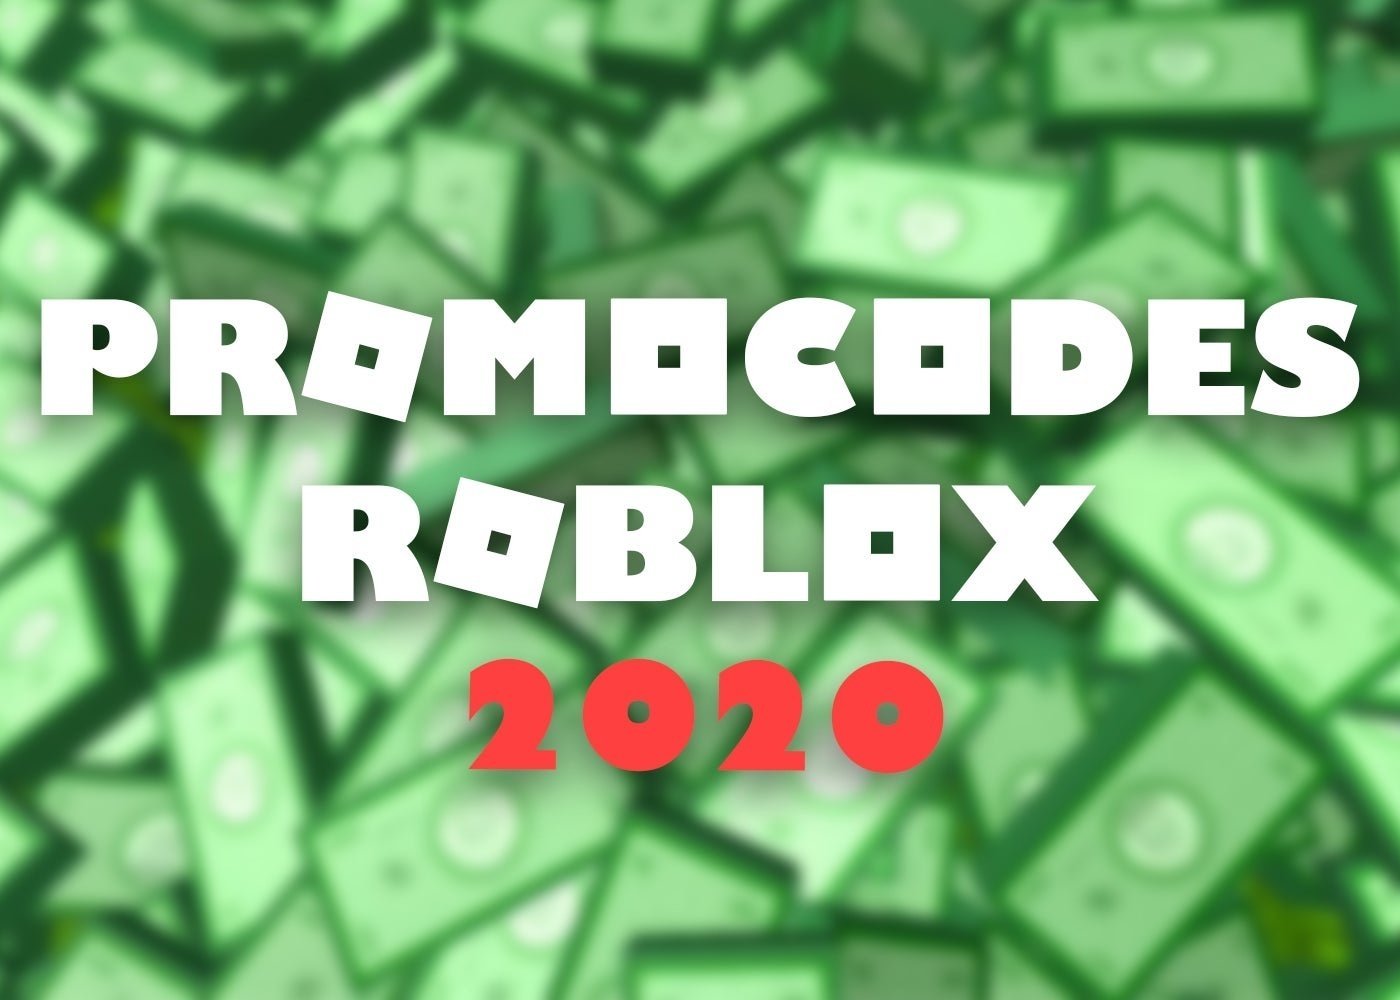 Promocodes De Roblox En Noviembre 2020 Lista De Codigos Completa - youtuber jugando roblox roblox robux image